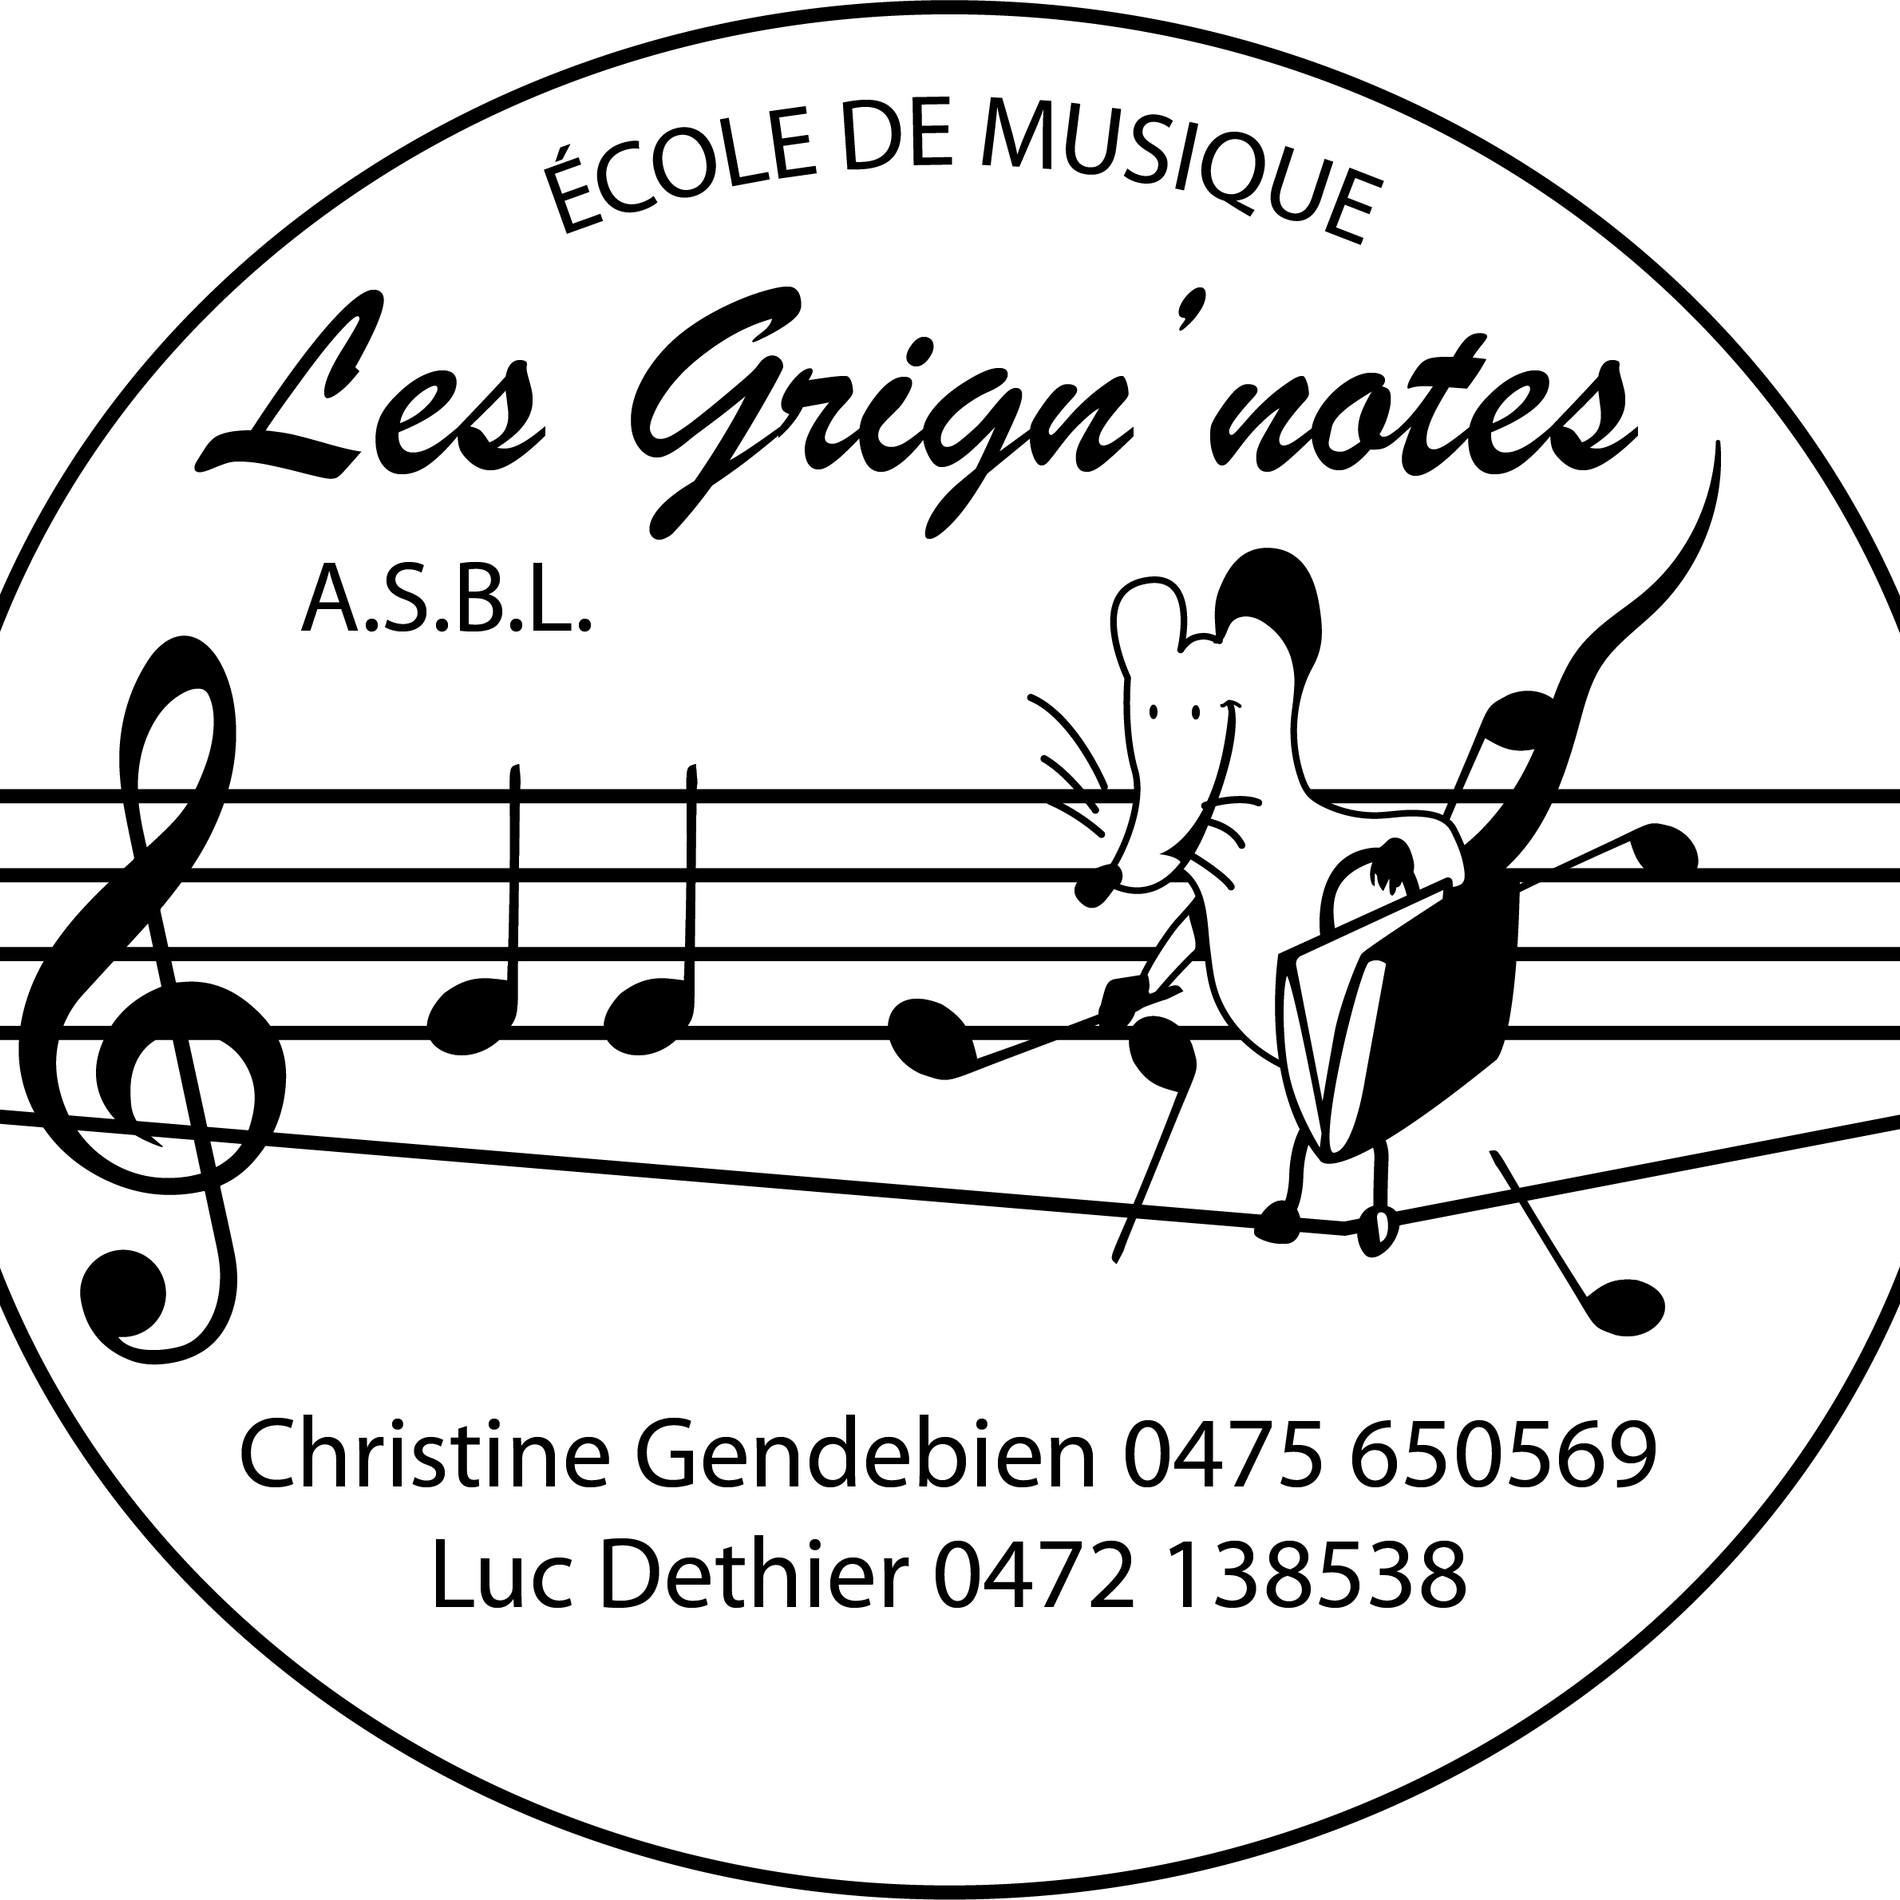 Concert des Grign'notes